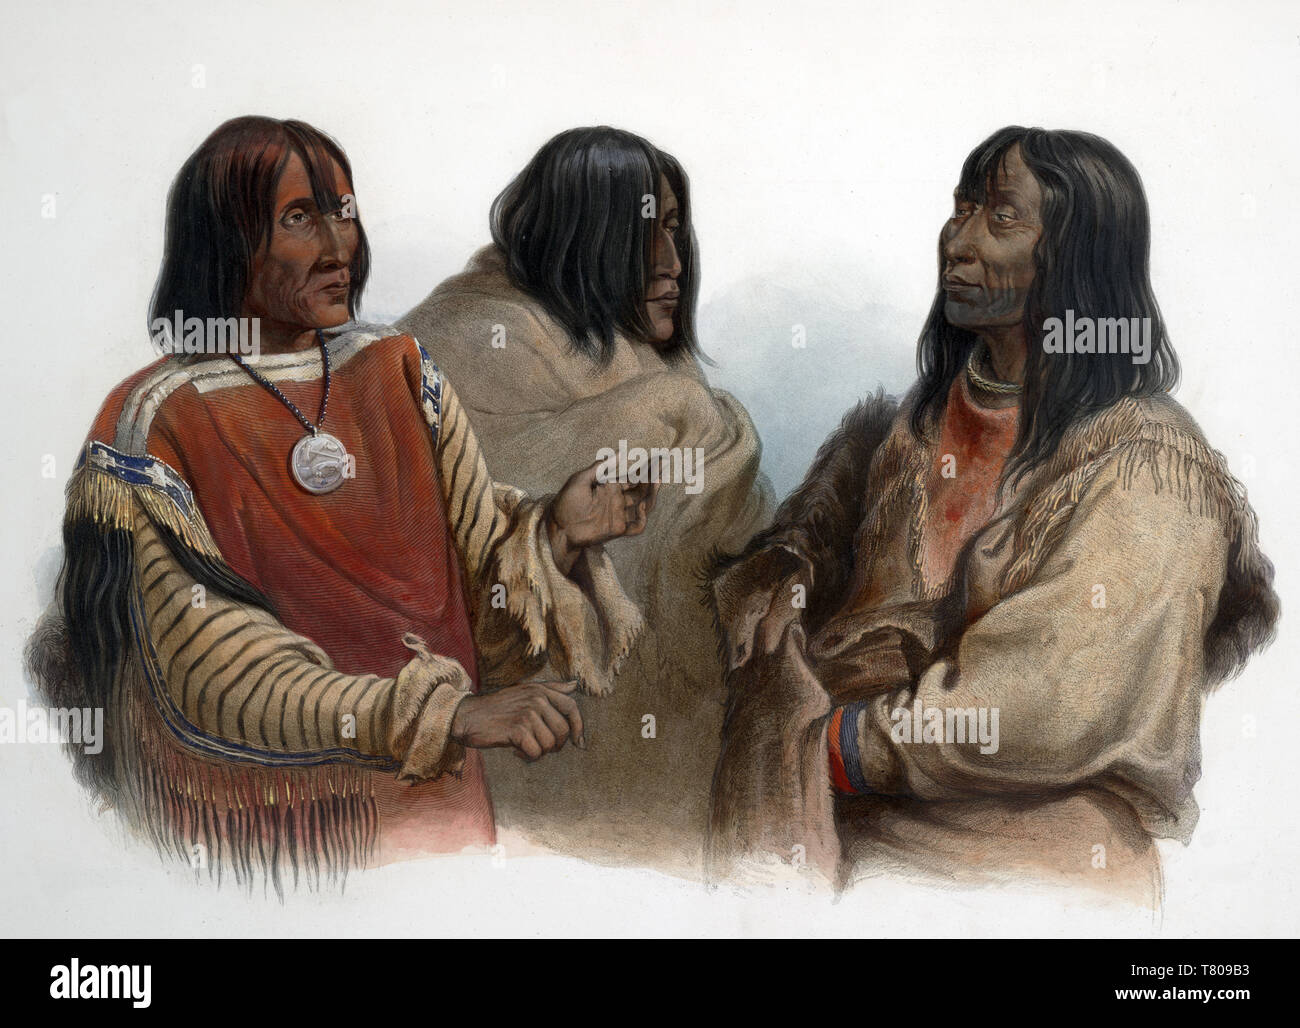 Los Jefes Indios de tribus nativas americanas, 1830s Foto de stock